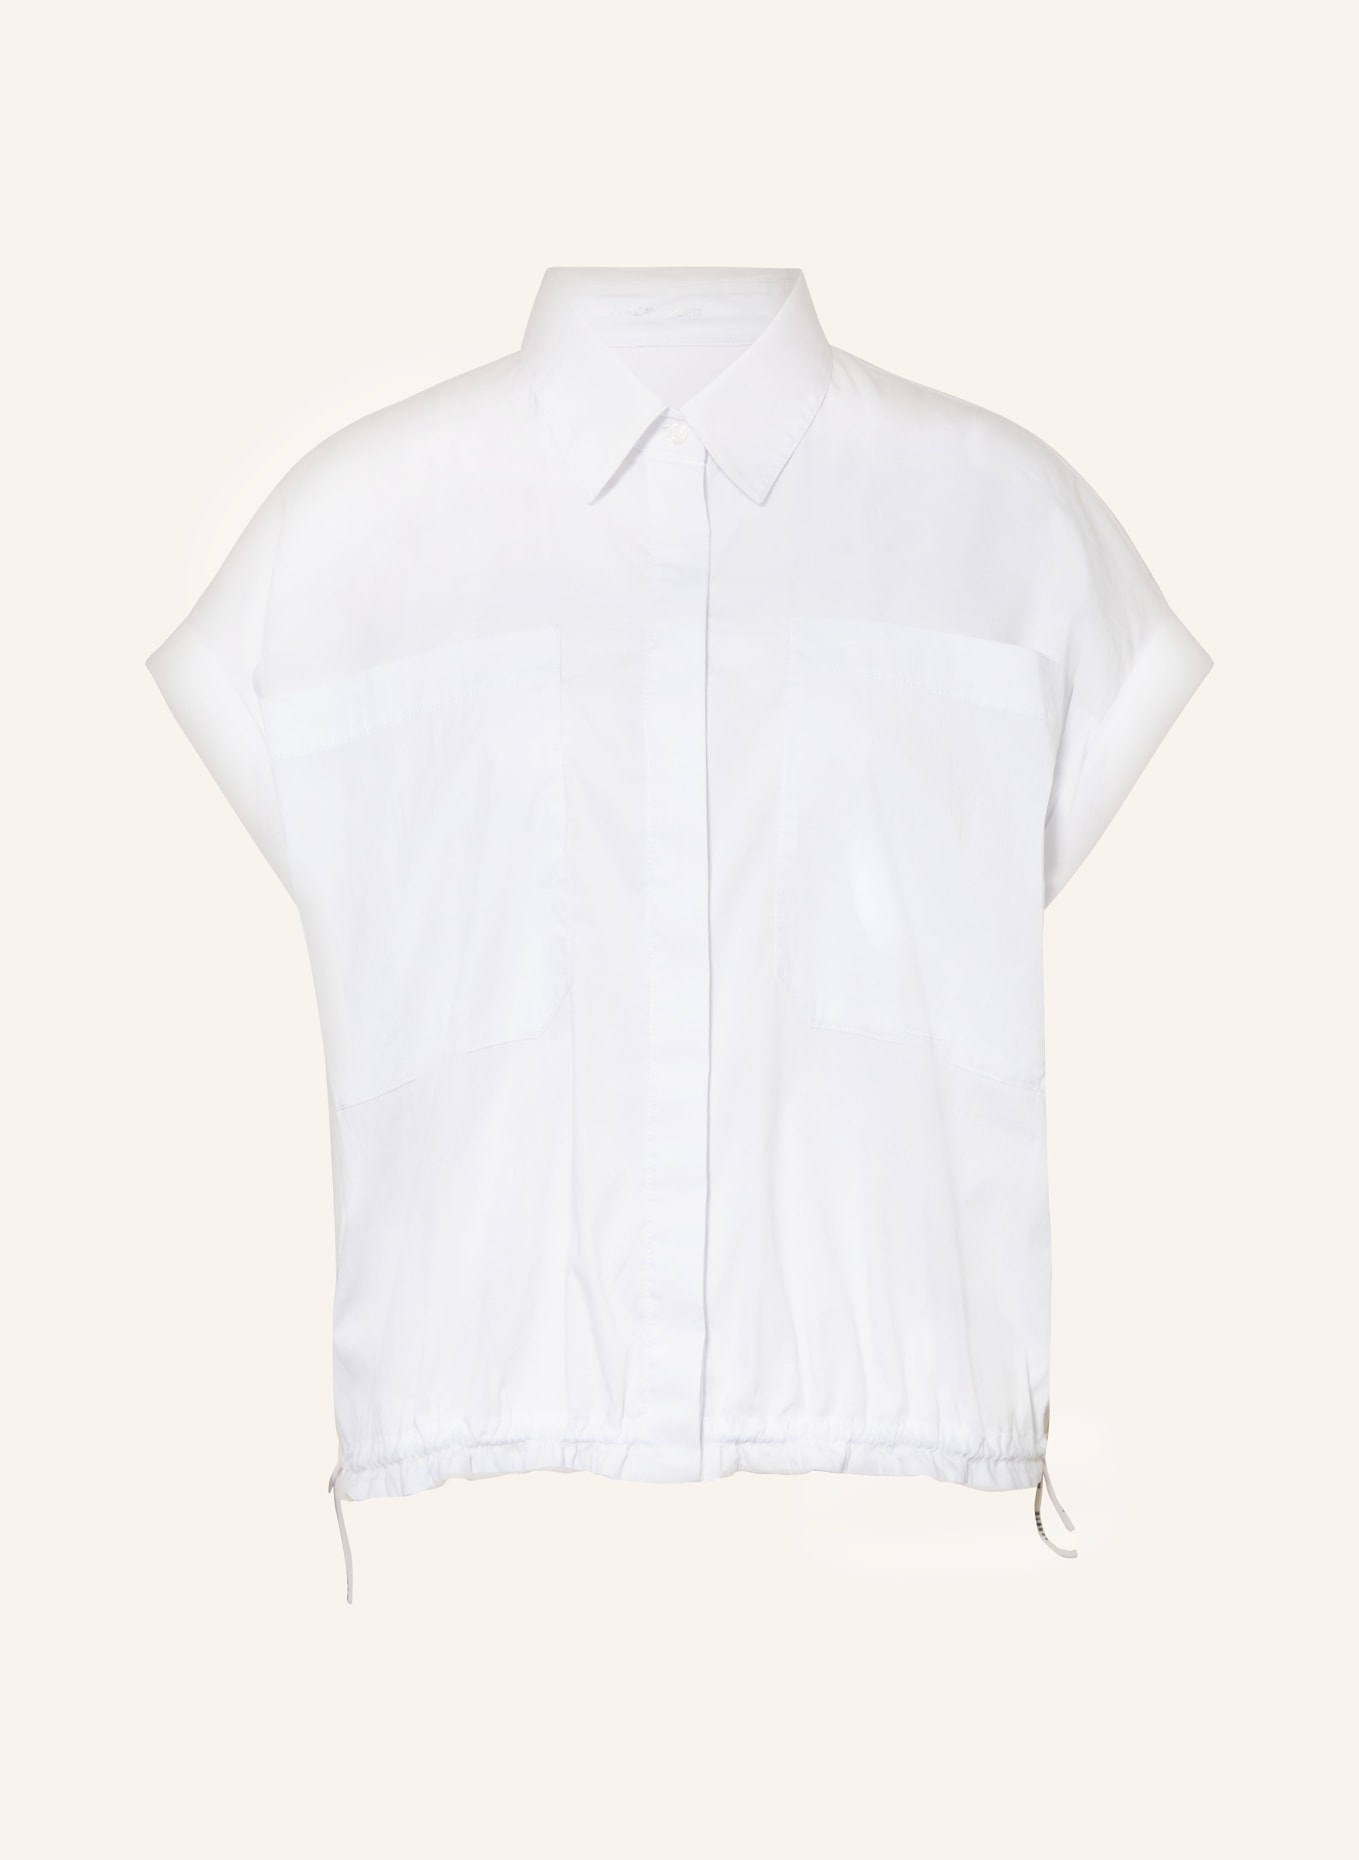 MARC CAIN Bluse, Farbe: 100 WHITE (Bild 1)